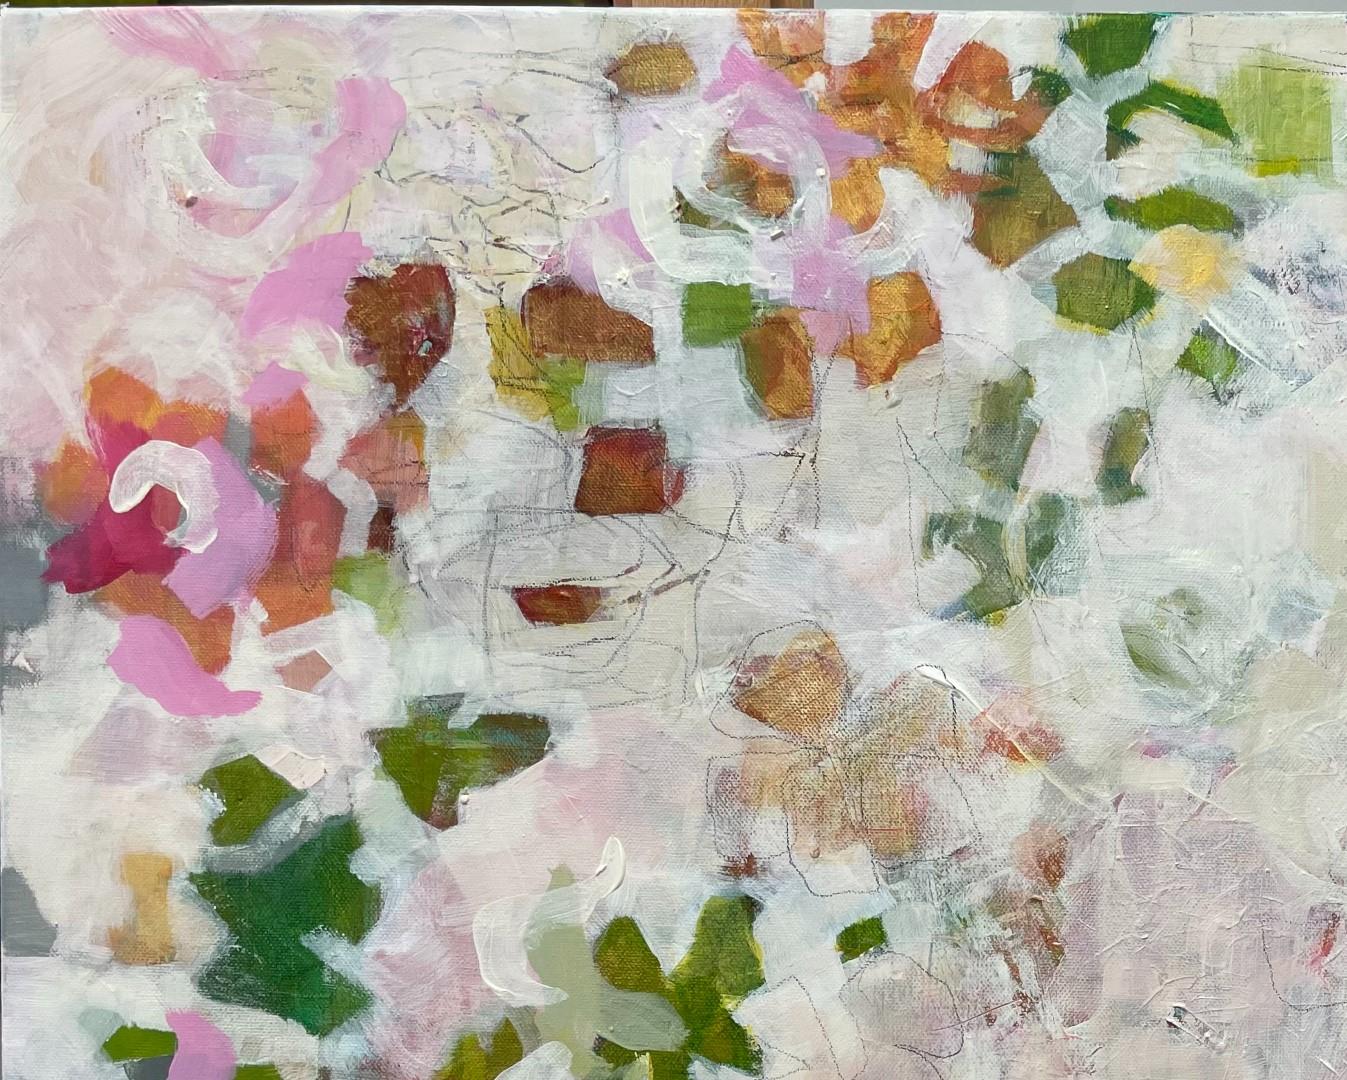 In Bloom ist ein zeitgenössisches, abstraktes Blumengemälde der texanischen Künstlerin Eleanor McCarthy.  Eleanor McCarthy verwendet  mischtechniken und Acrylfarben auf Leinwand, um die beruhigenden Farben ihrer neuen zeitgenössischen Gemälde zu